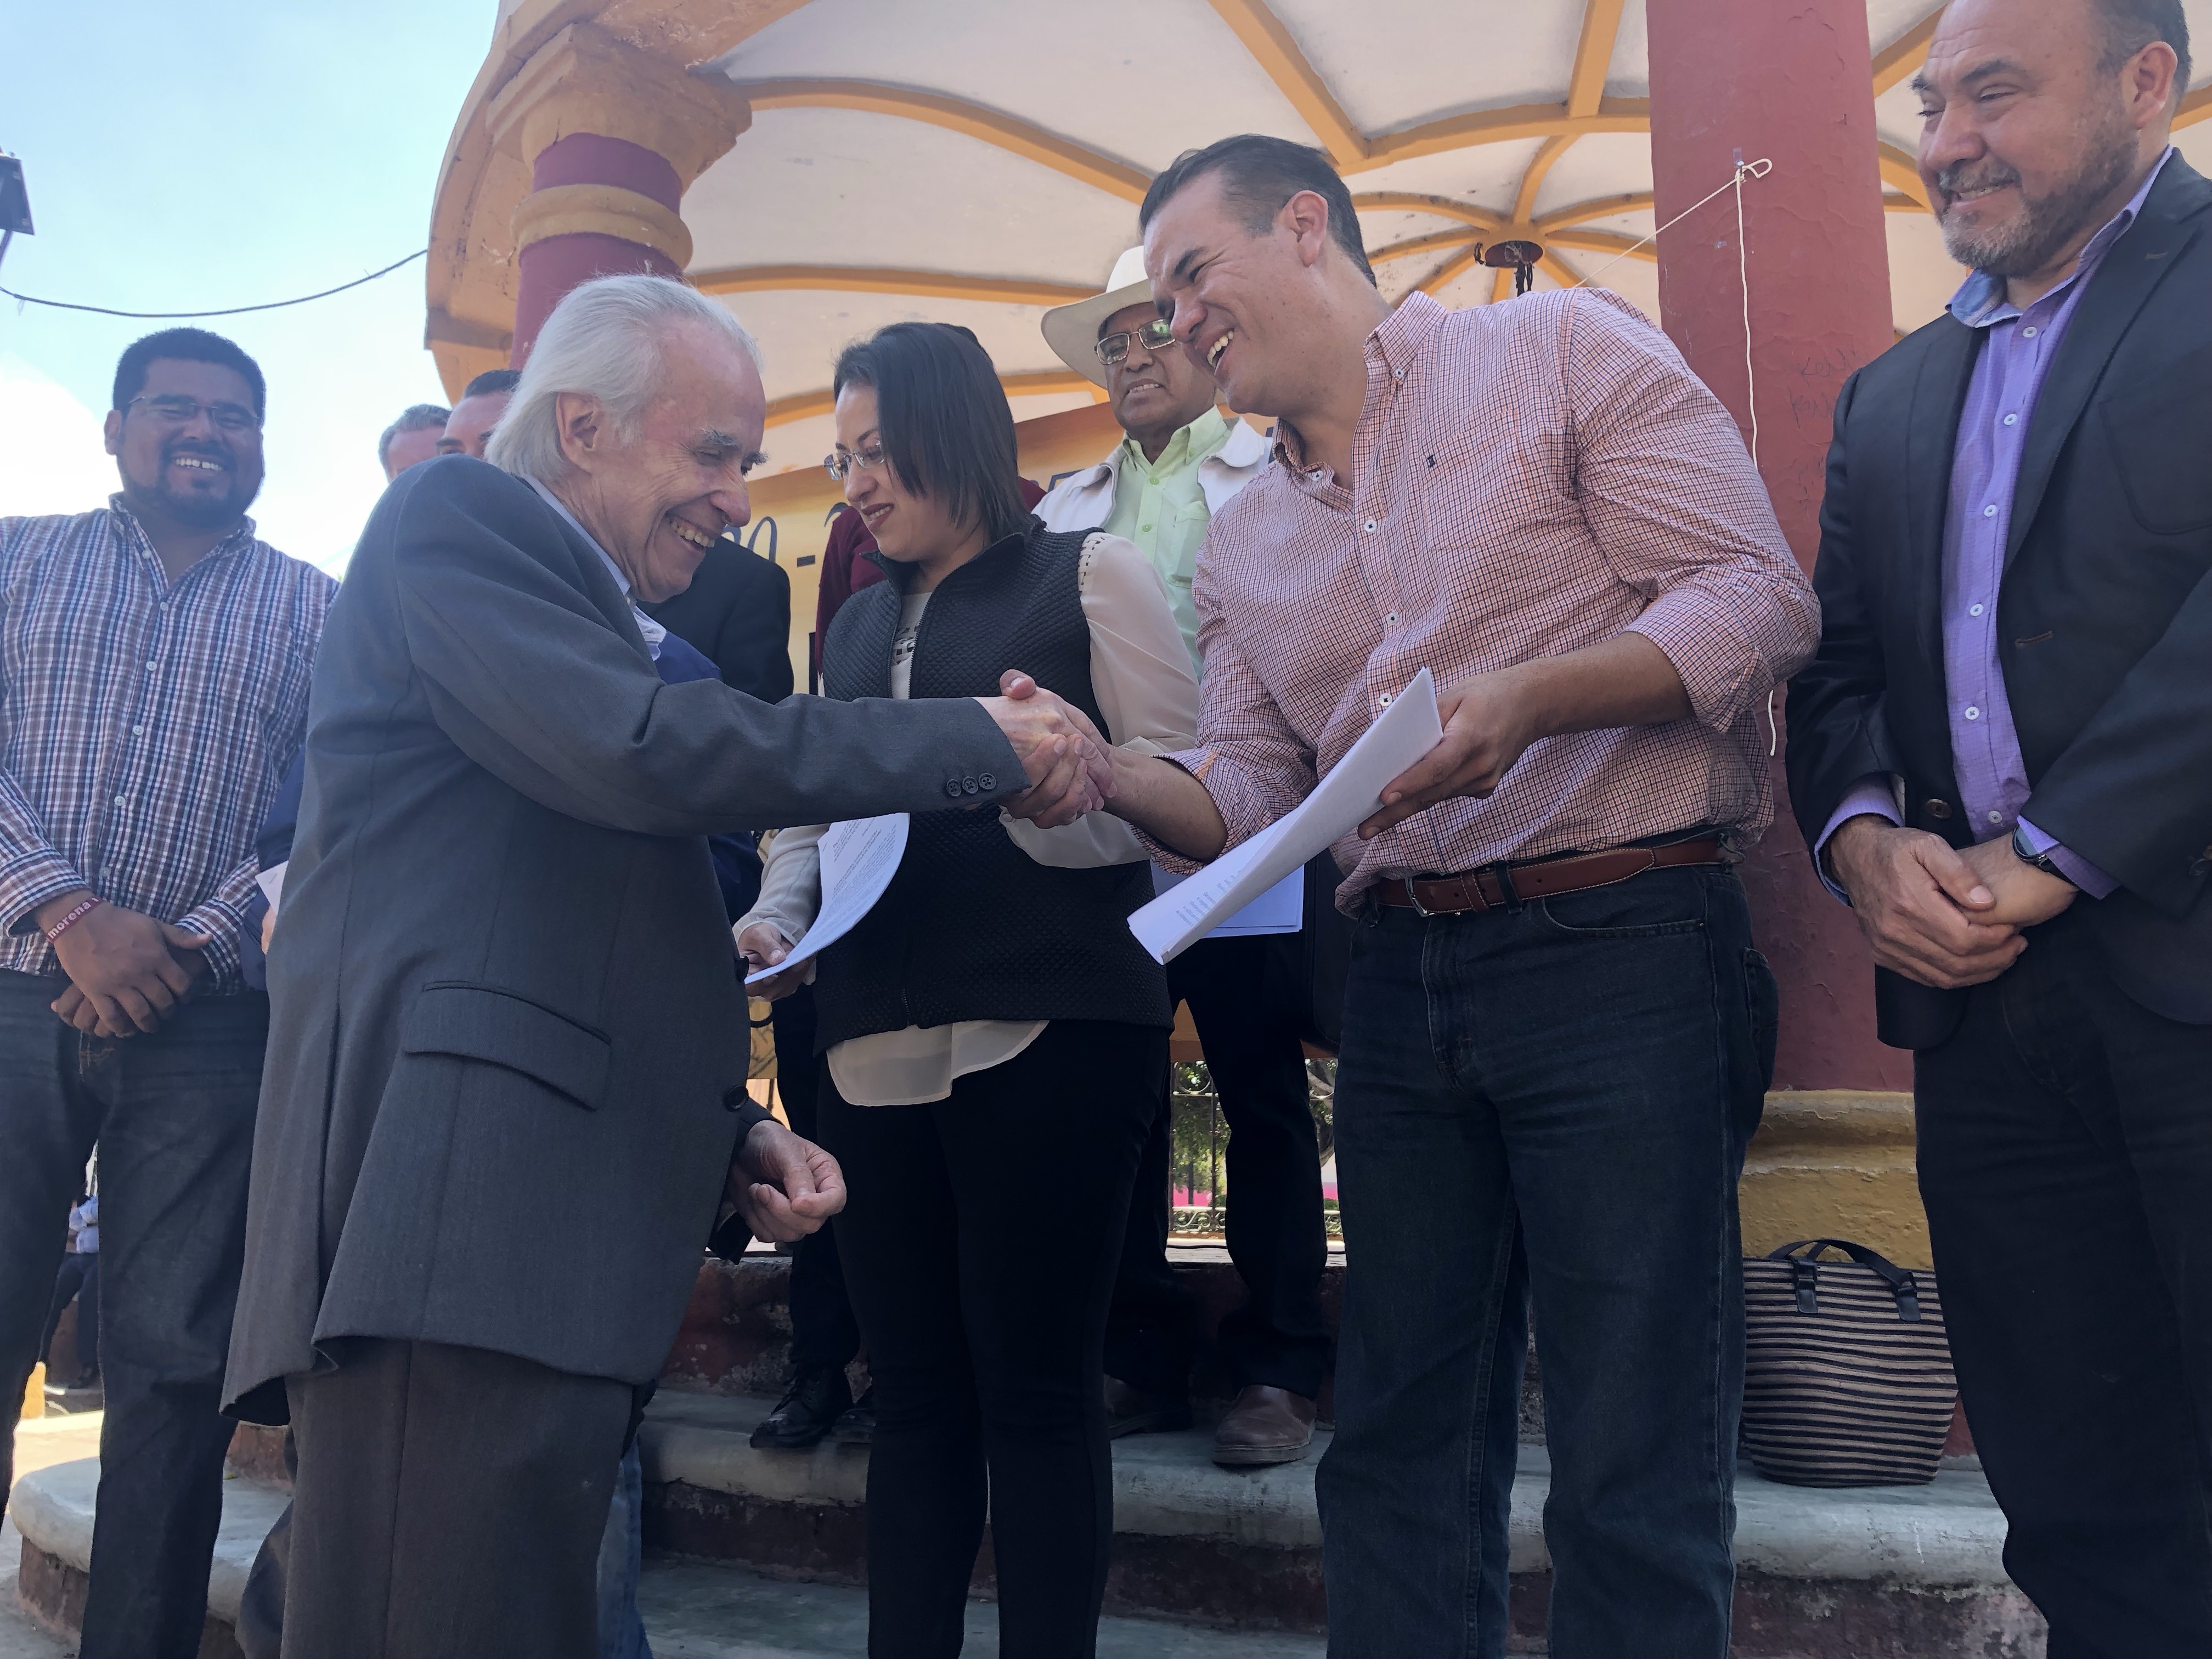  Acuden diputados a escuchar petición de Santa Rosa Jáuregui para convertirse en municipio